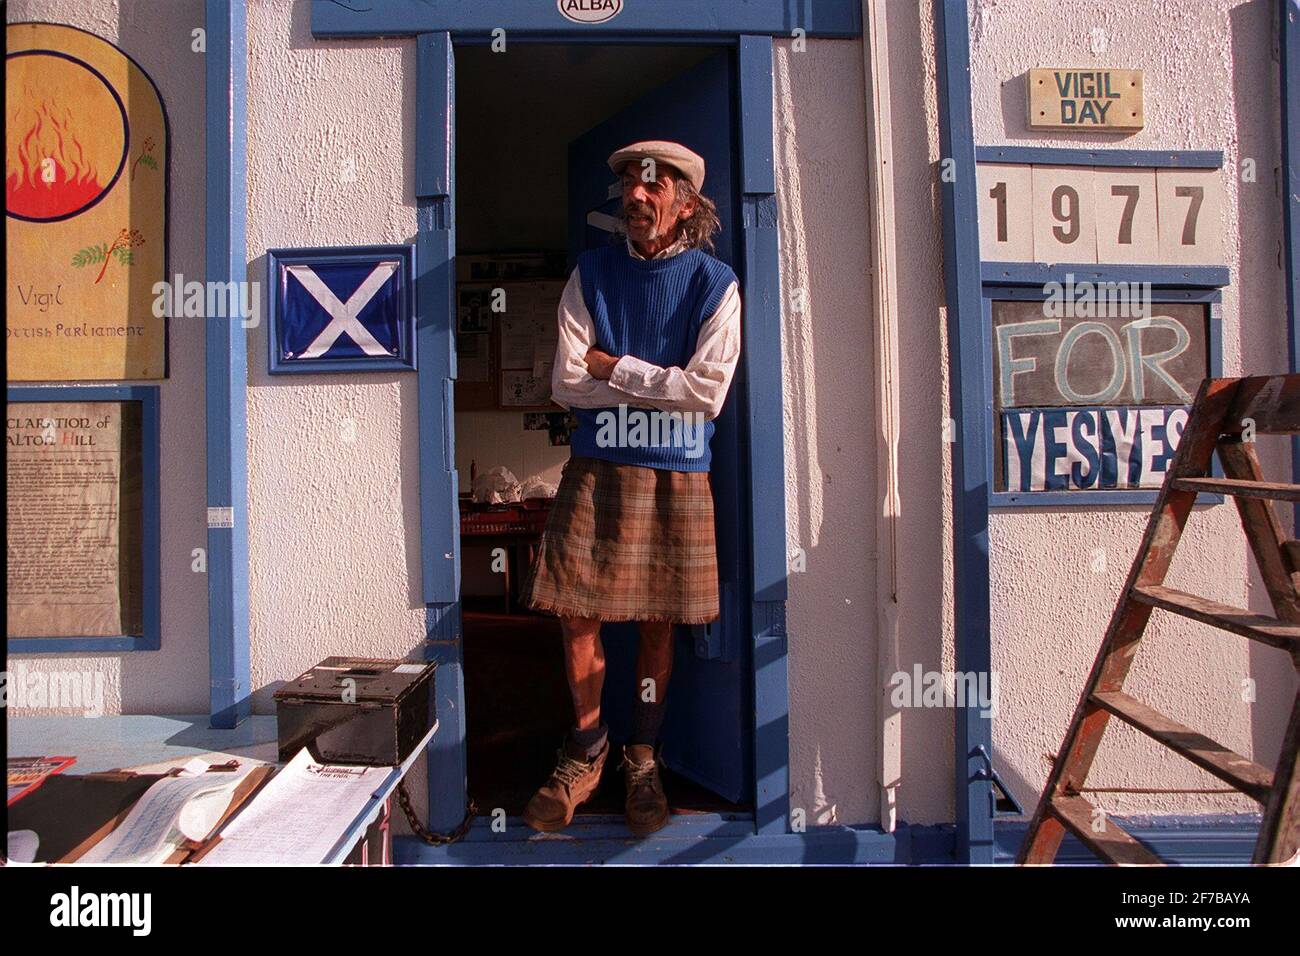 Lewis Livingstone Scottish Devolution September 1997 Lewis Livingstone Wer hat Hat sich für die Ja-Stimme für die schottische Devolution eingesetzt Fünfeinhalb Jahre außerhalb des vorgeschlagenen schottischen Parlaments Gebäude in Edinburgh, Schottland Stockfoto